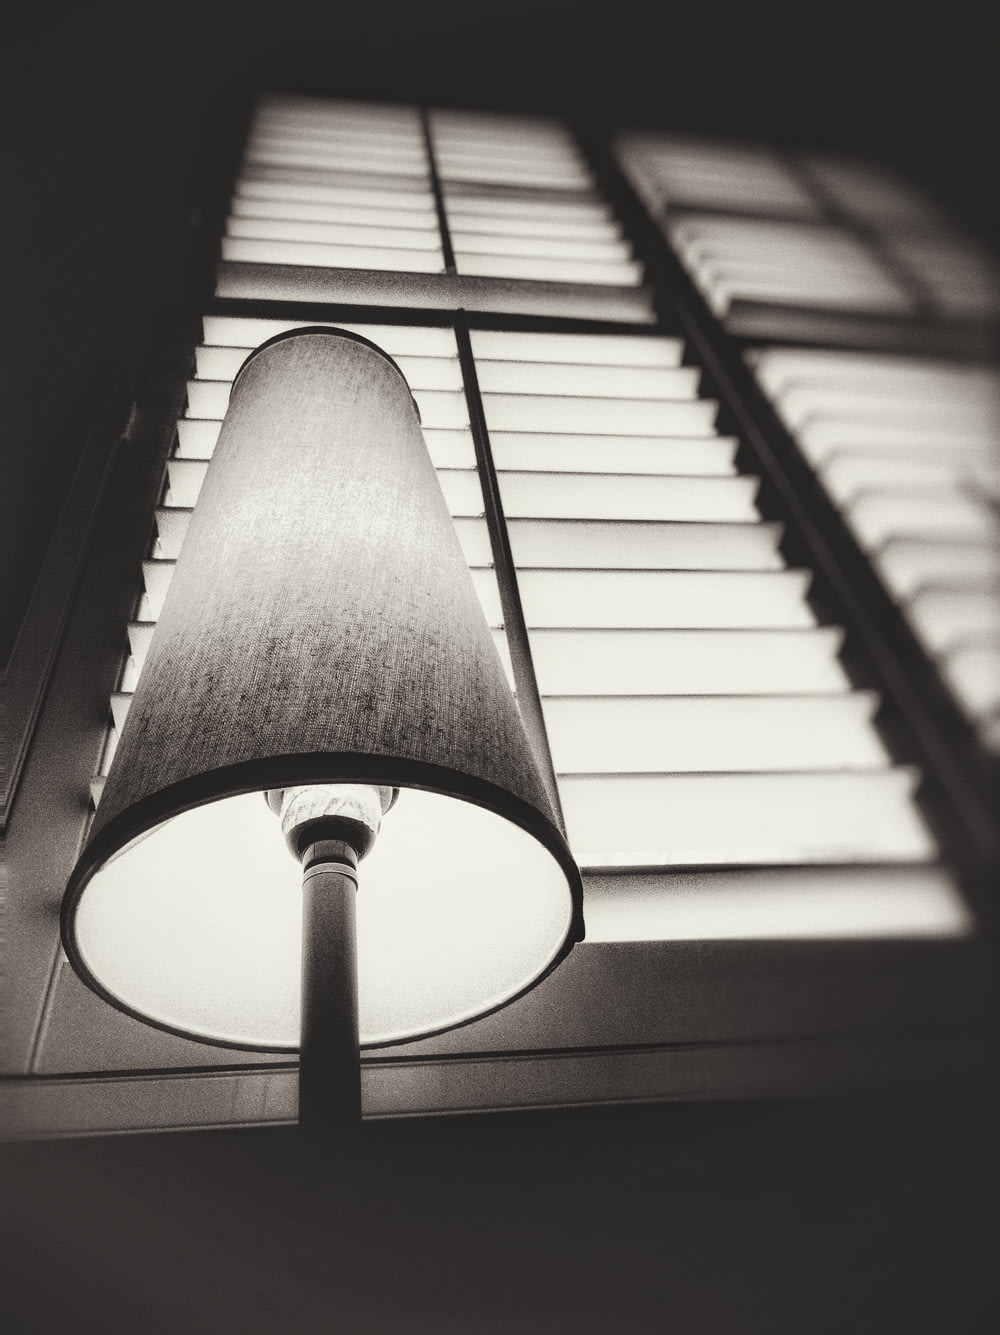 fotografia in scala di grigi della lampada da tavolo